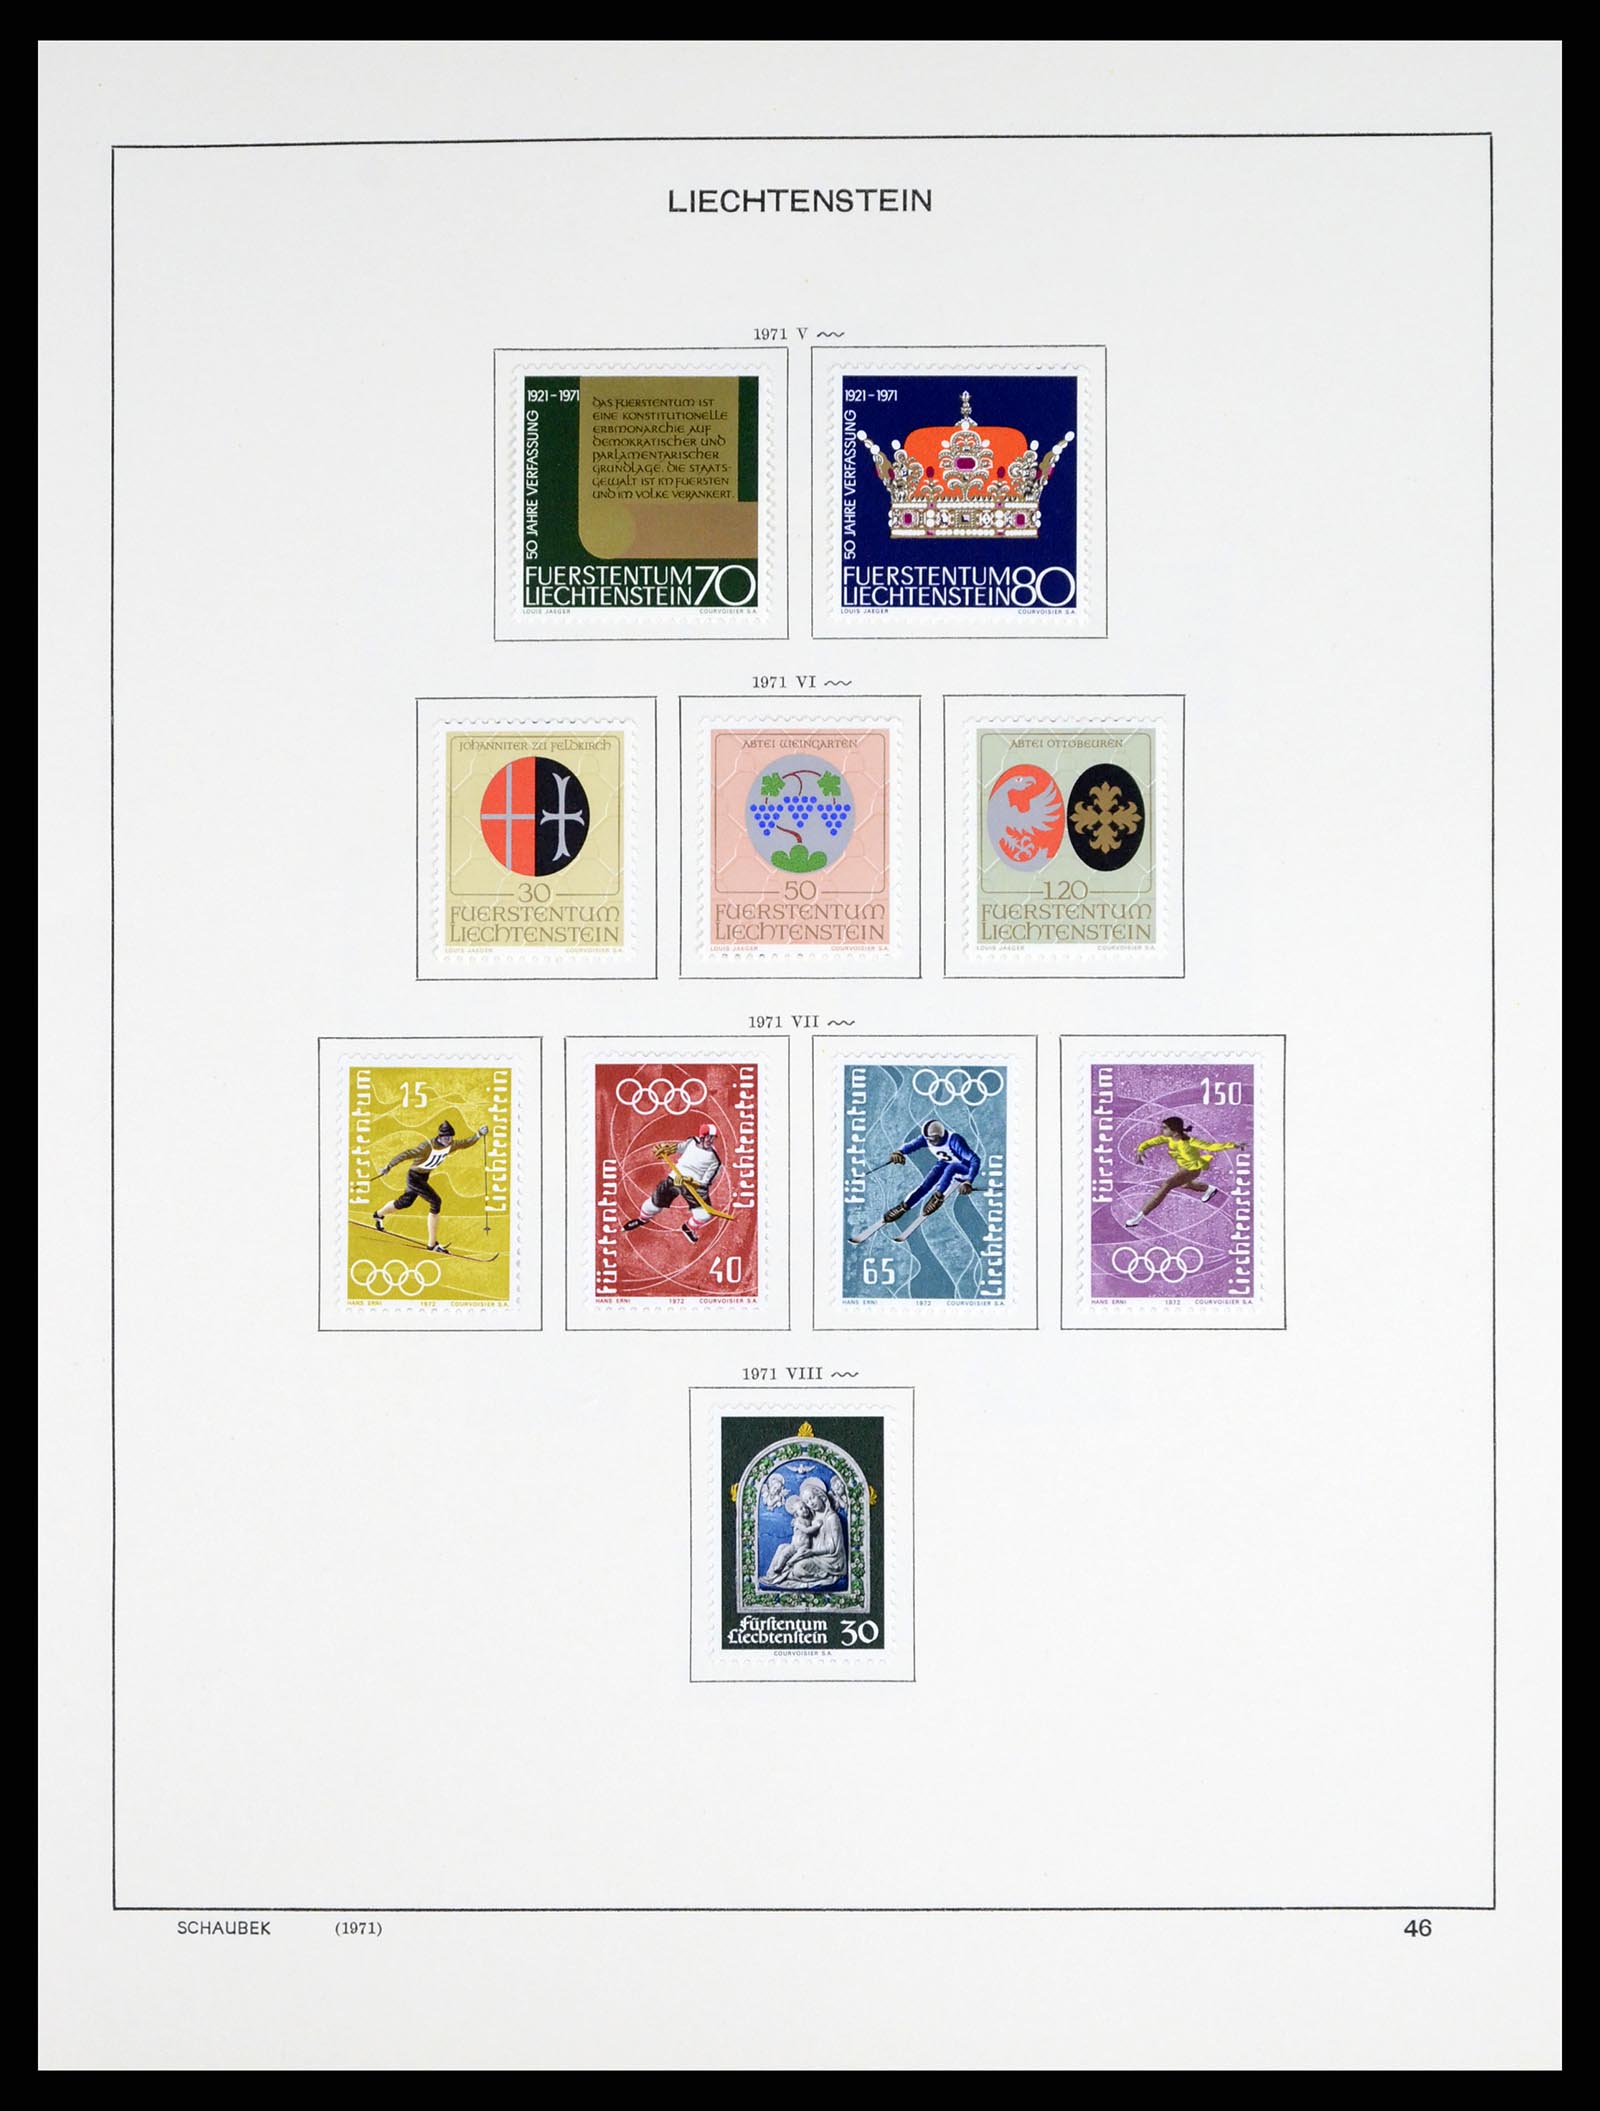 37547 057 - Stamp collection 37547 Liechtenstein 1912-2011.